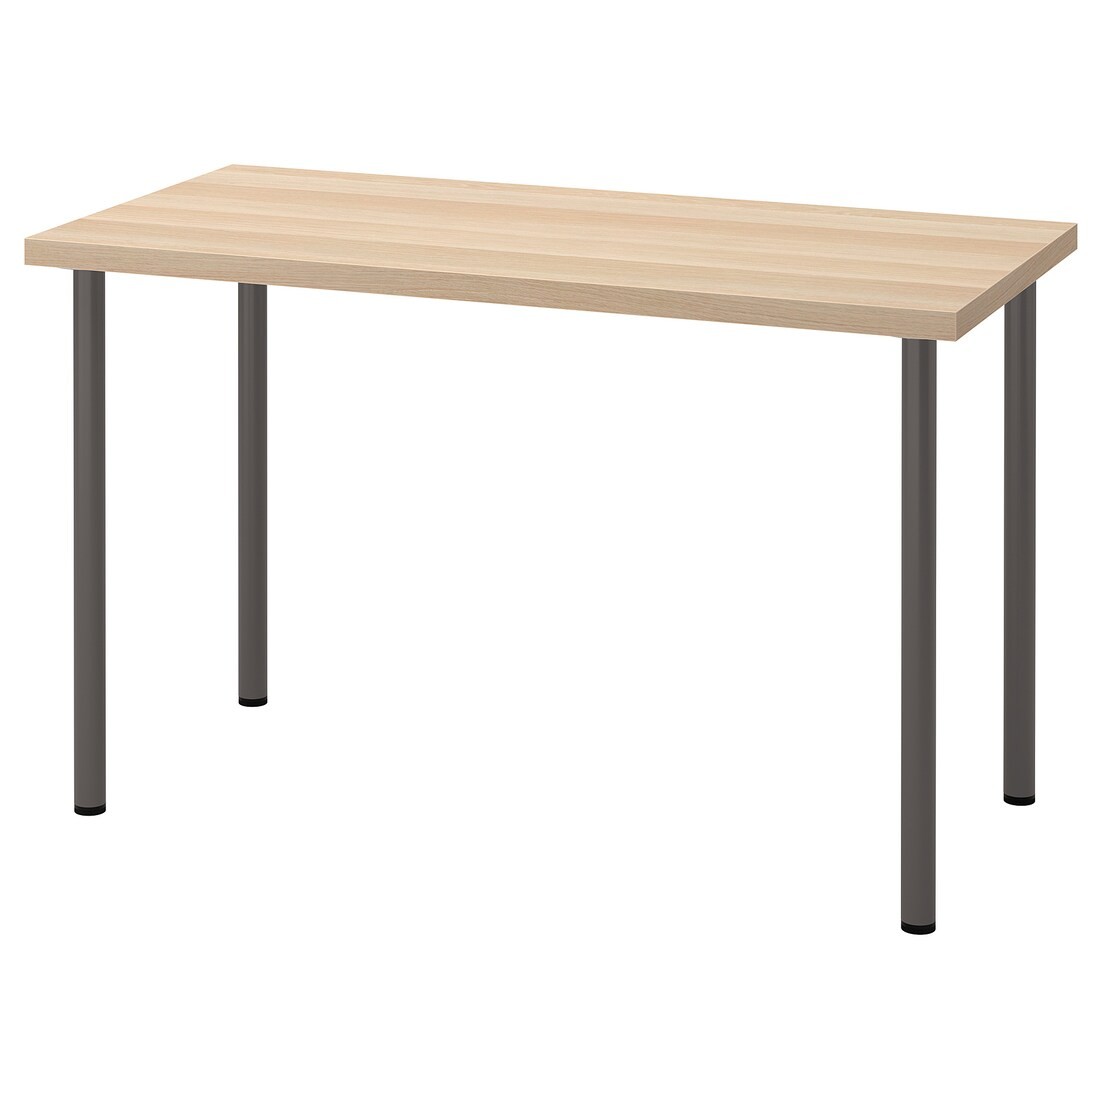 IKEA LAGKAPTEN ЛАГКАПТЕН / ADILS АДИЛЬС Письменный стол, под беленый дуб / темно-серый, 120x60 см 99416887 994.168.87